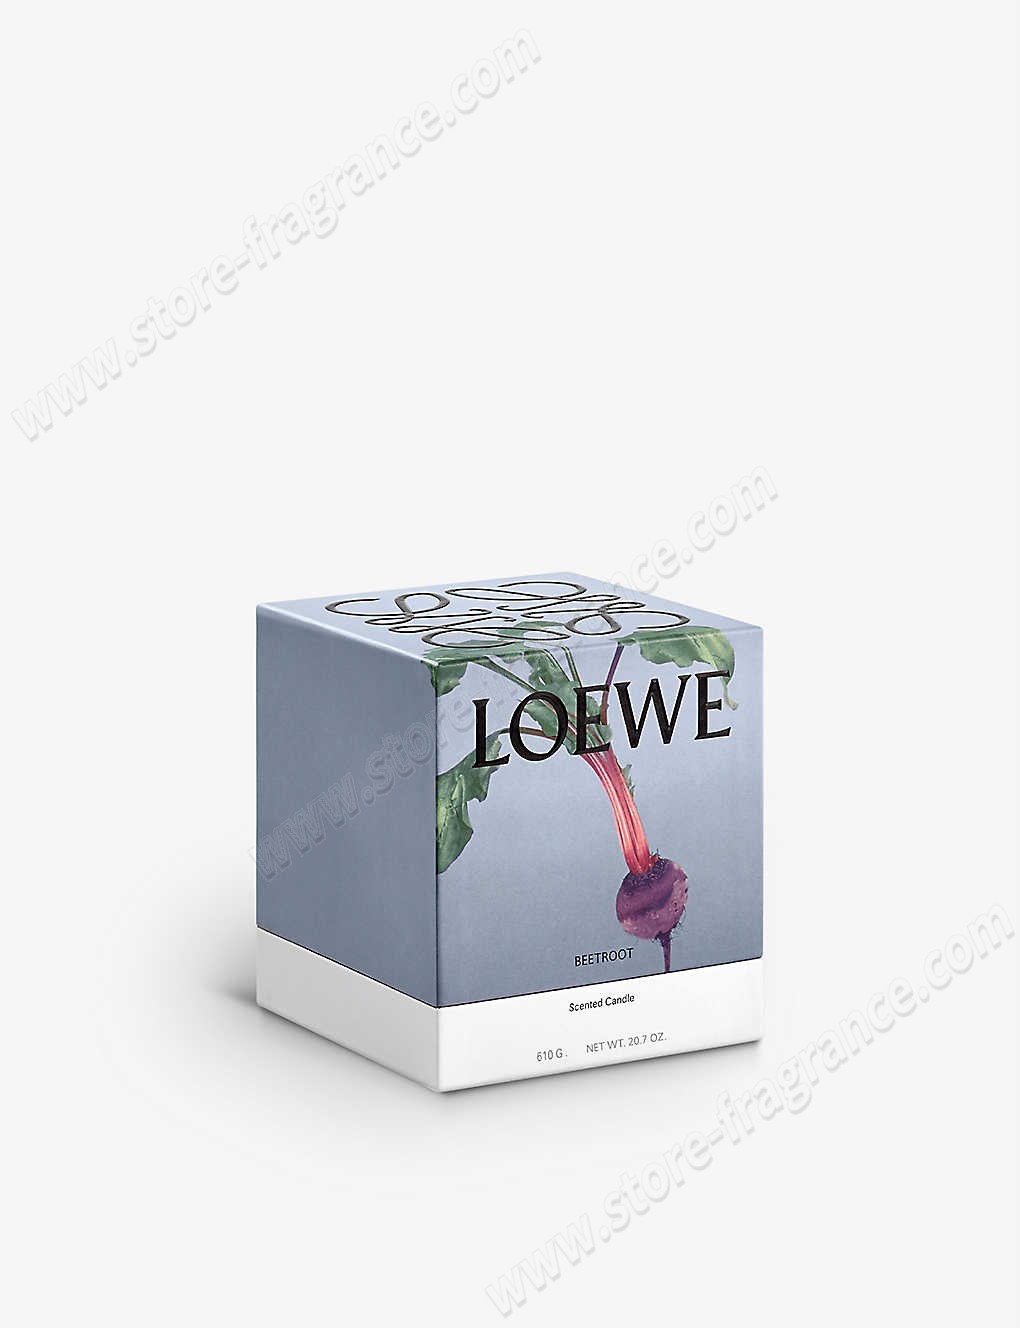 LOEWE/Beetroot medium candle 1.15kg ✿ Discount Store - -1